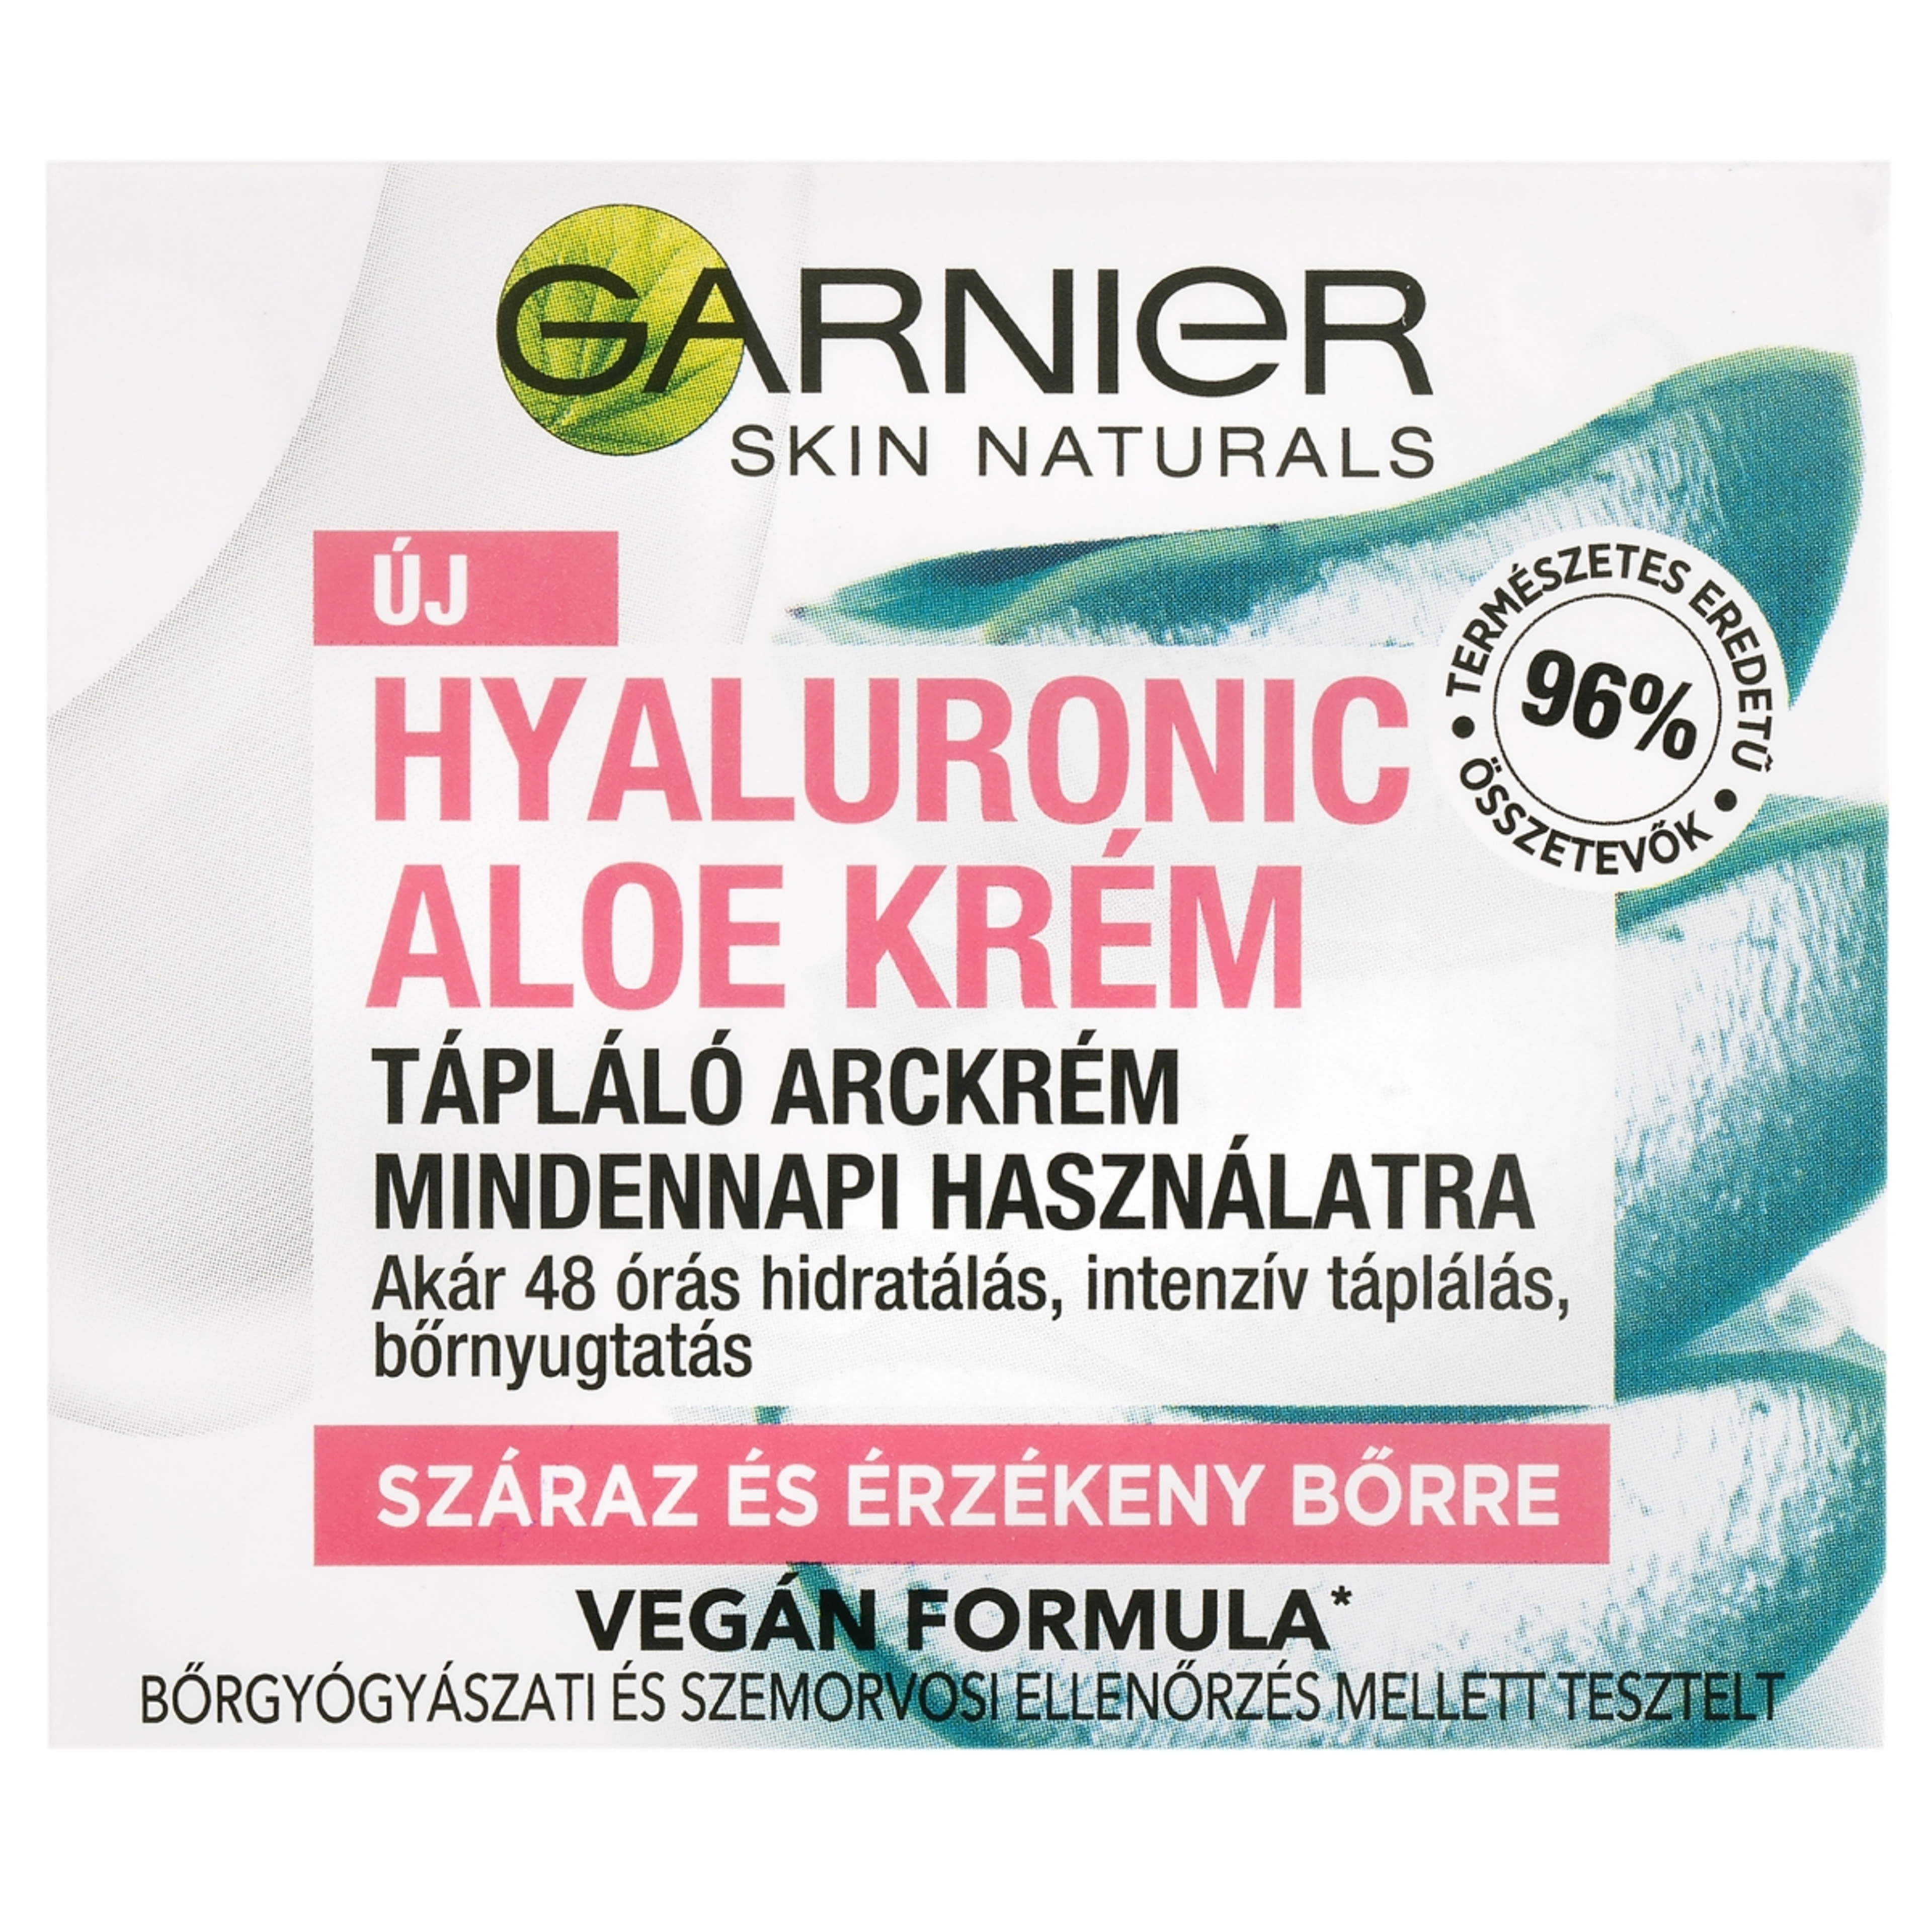 Garnier Skin Naturals Hyaluronic Aloe krém 50 ml száraz és érzékeny bőrre - 1 db-1